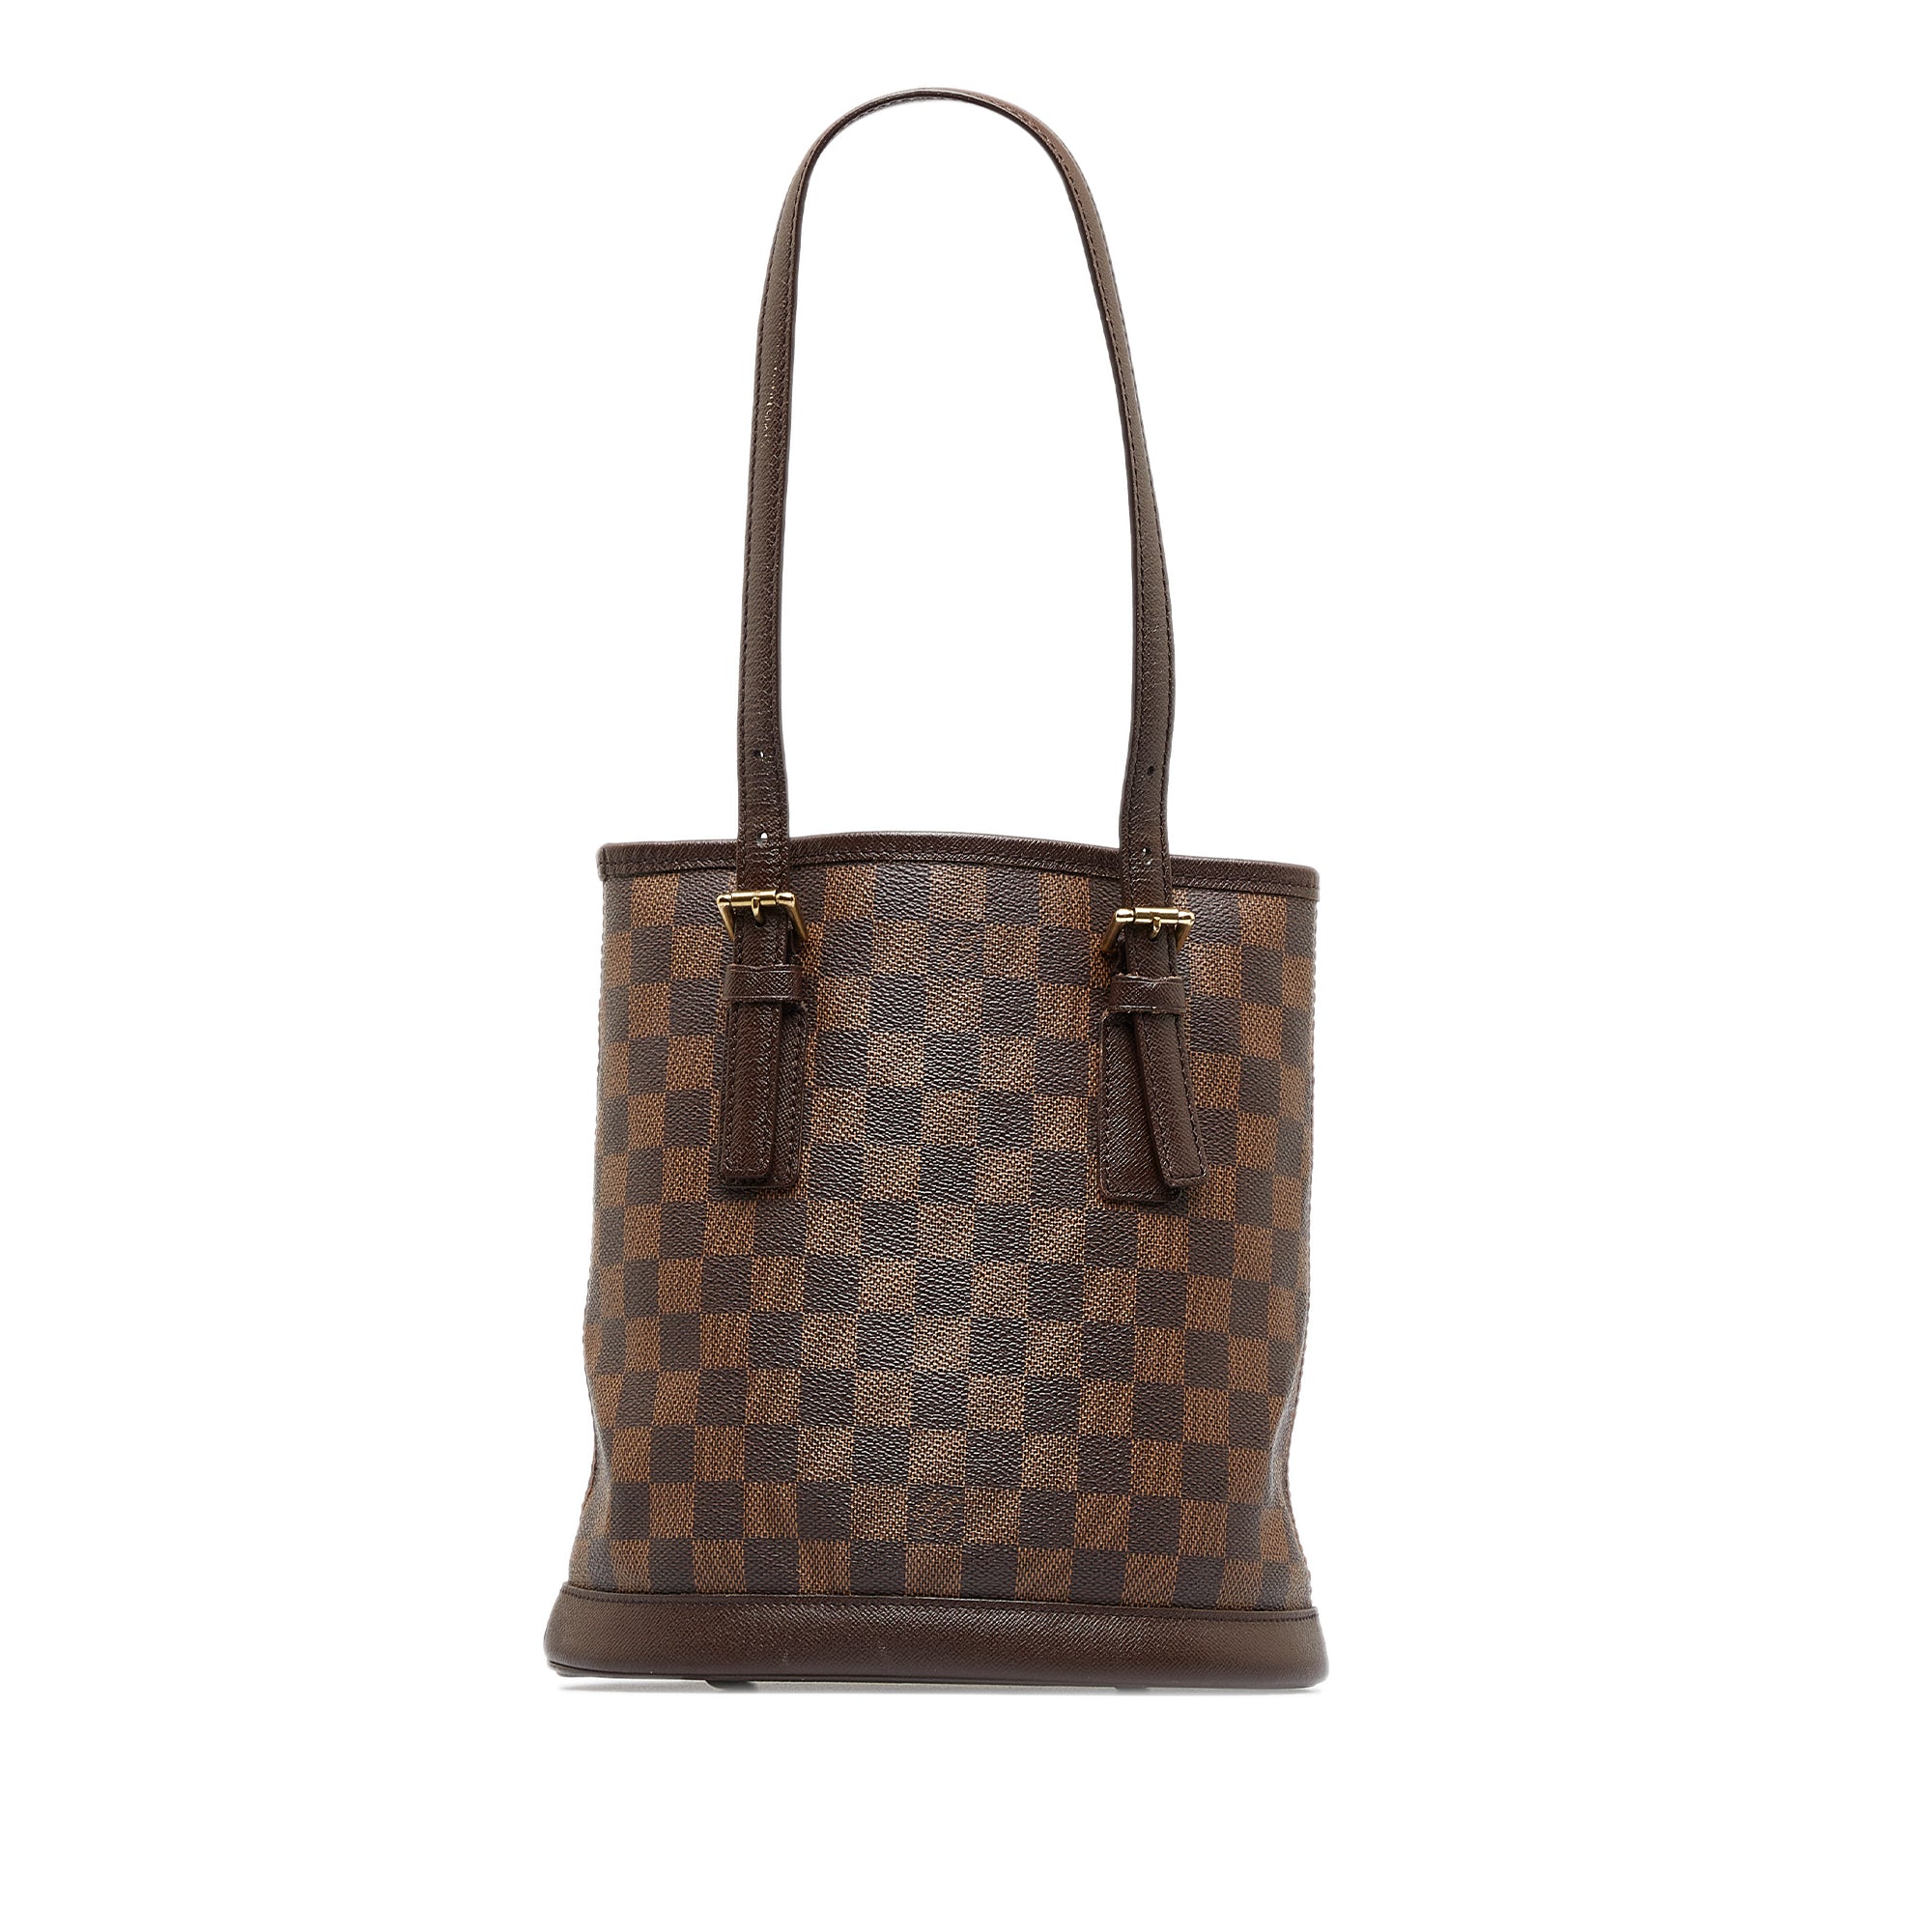 Louis Vuitton Marais Bucket Bags